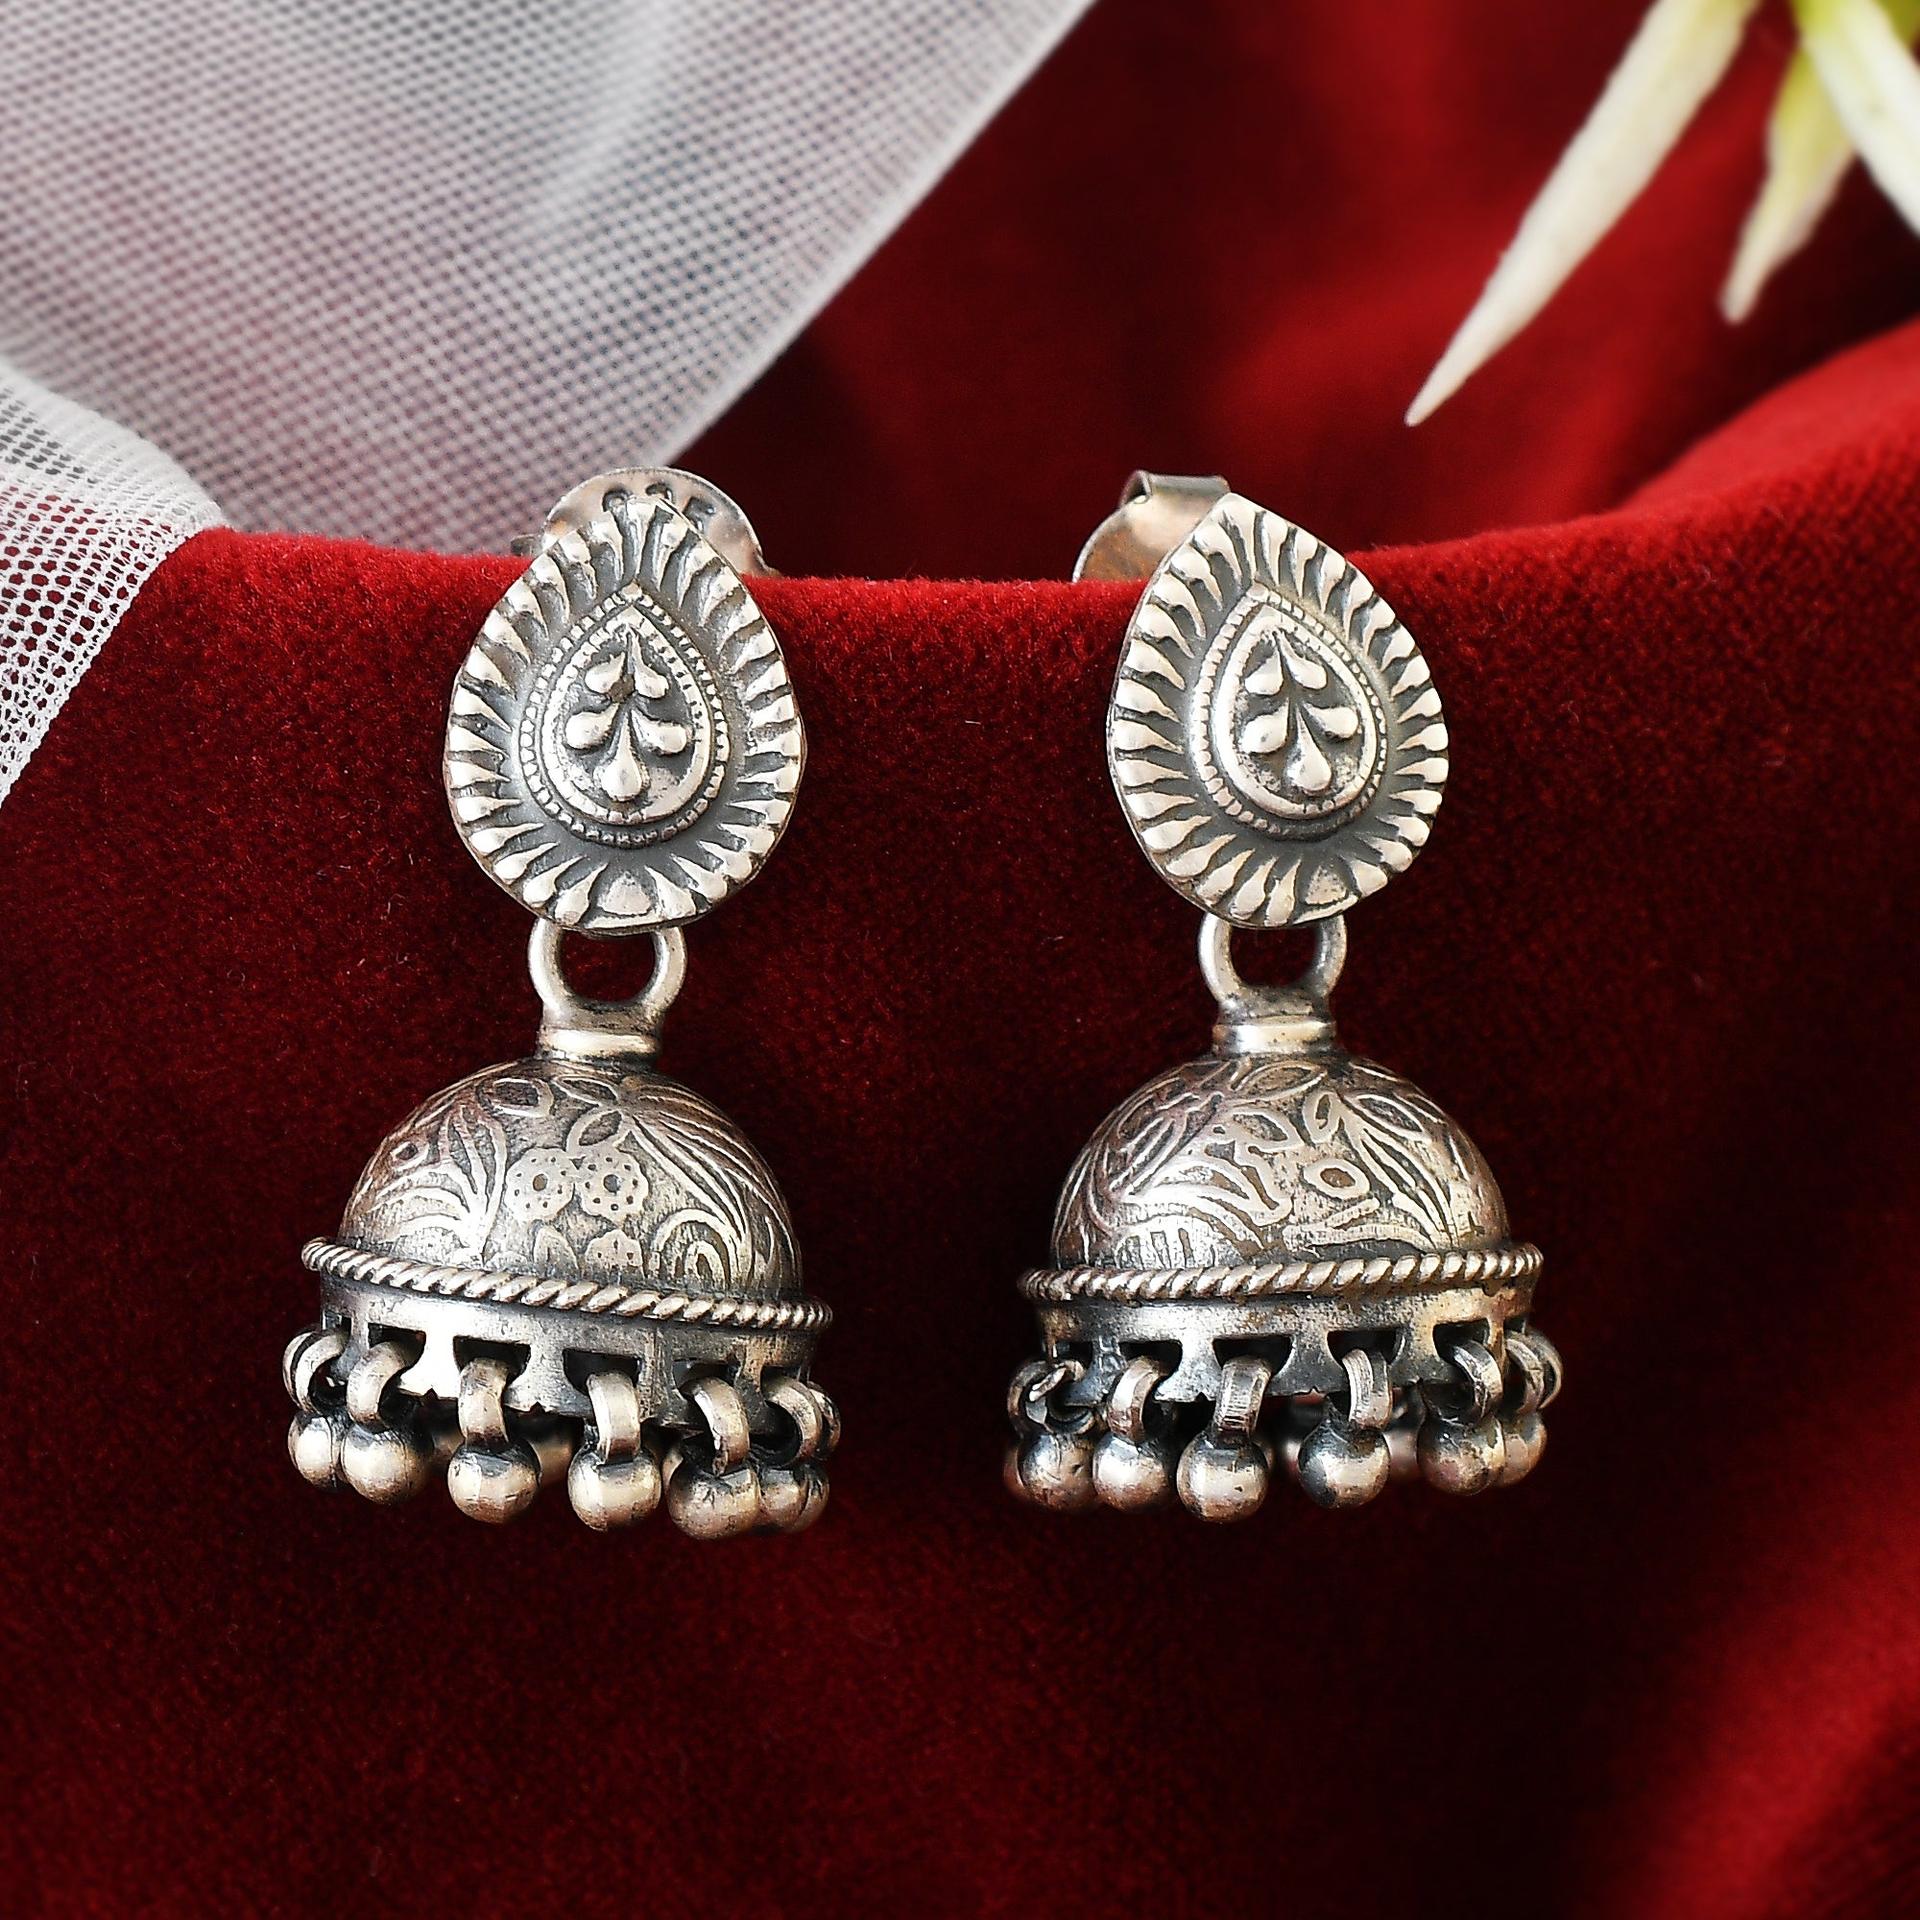 92.5 silver earrings